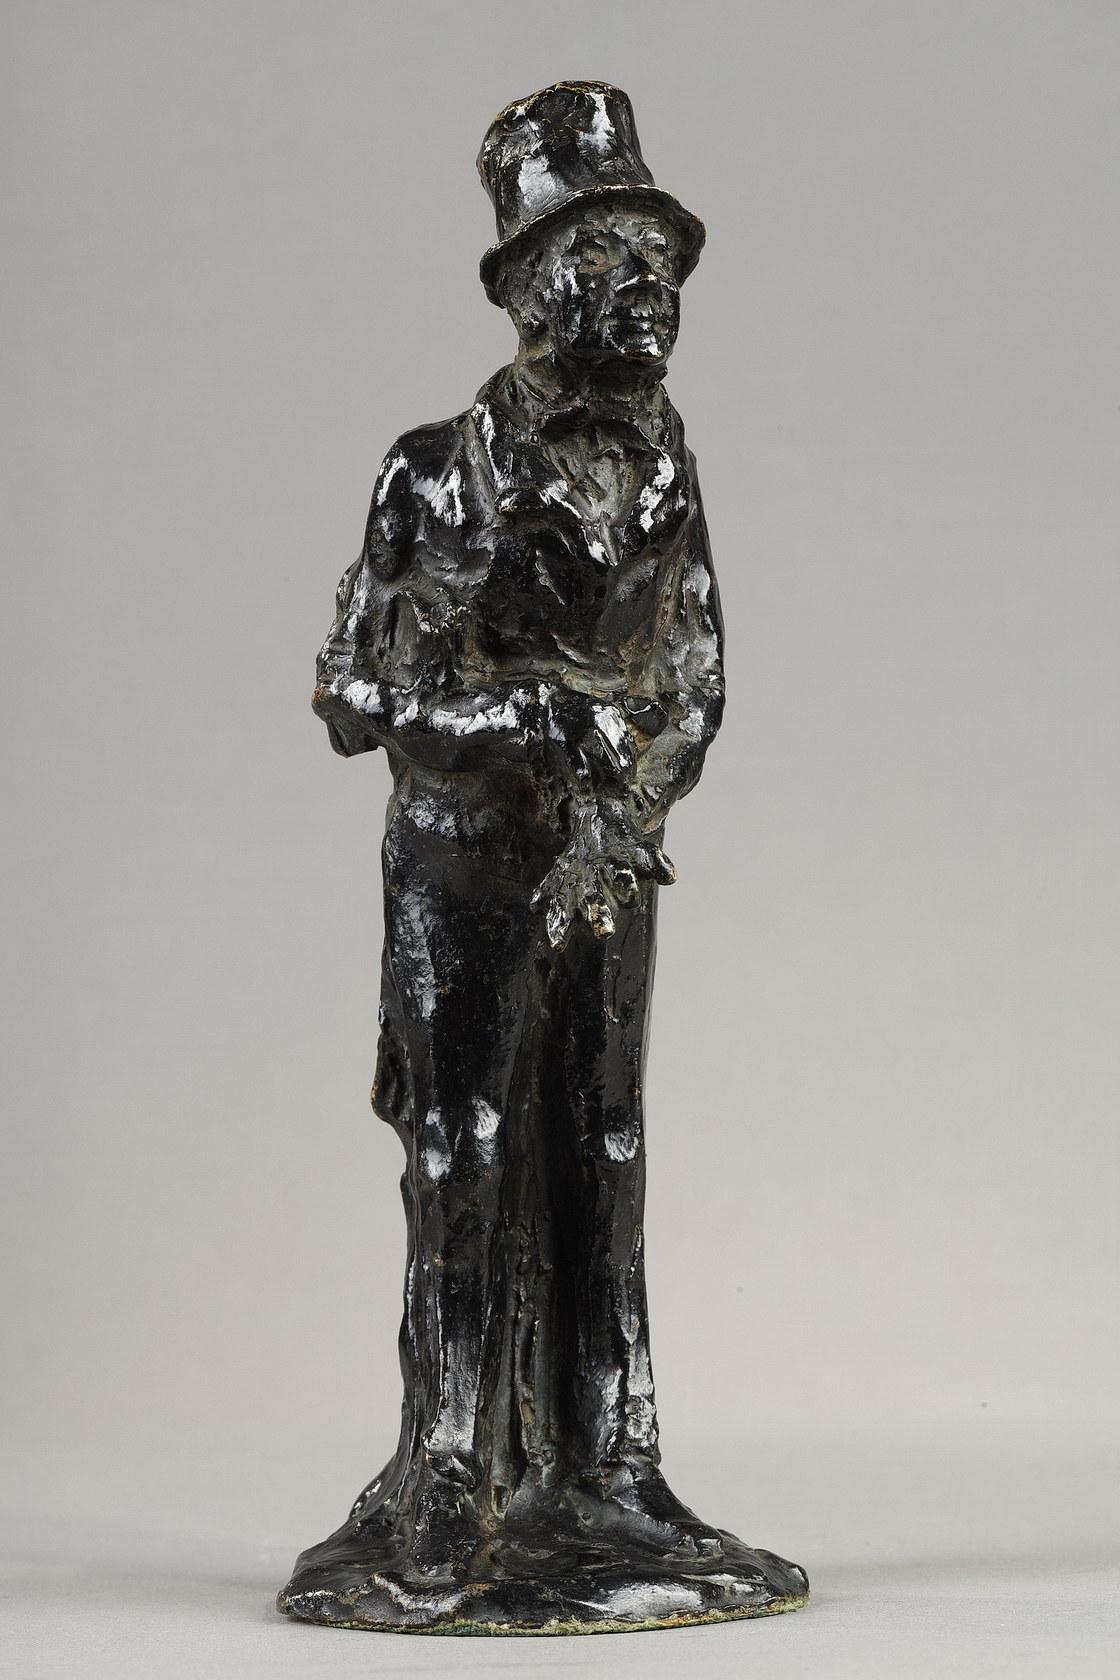 Businessman - Sculpture by Honoré Daumier